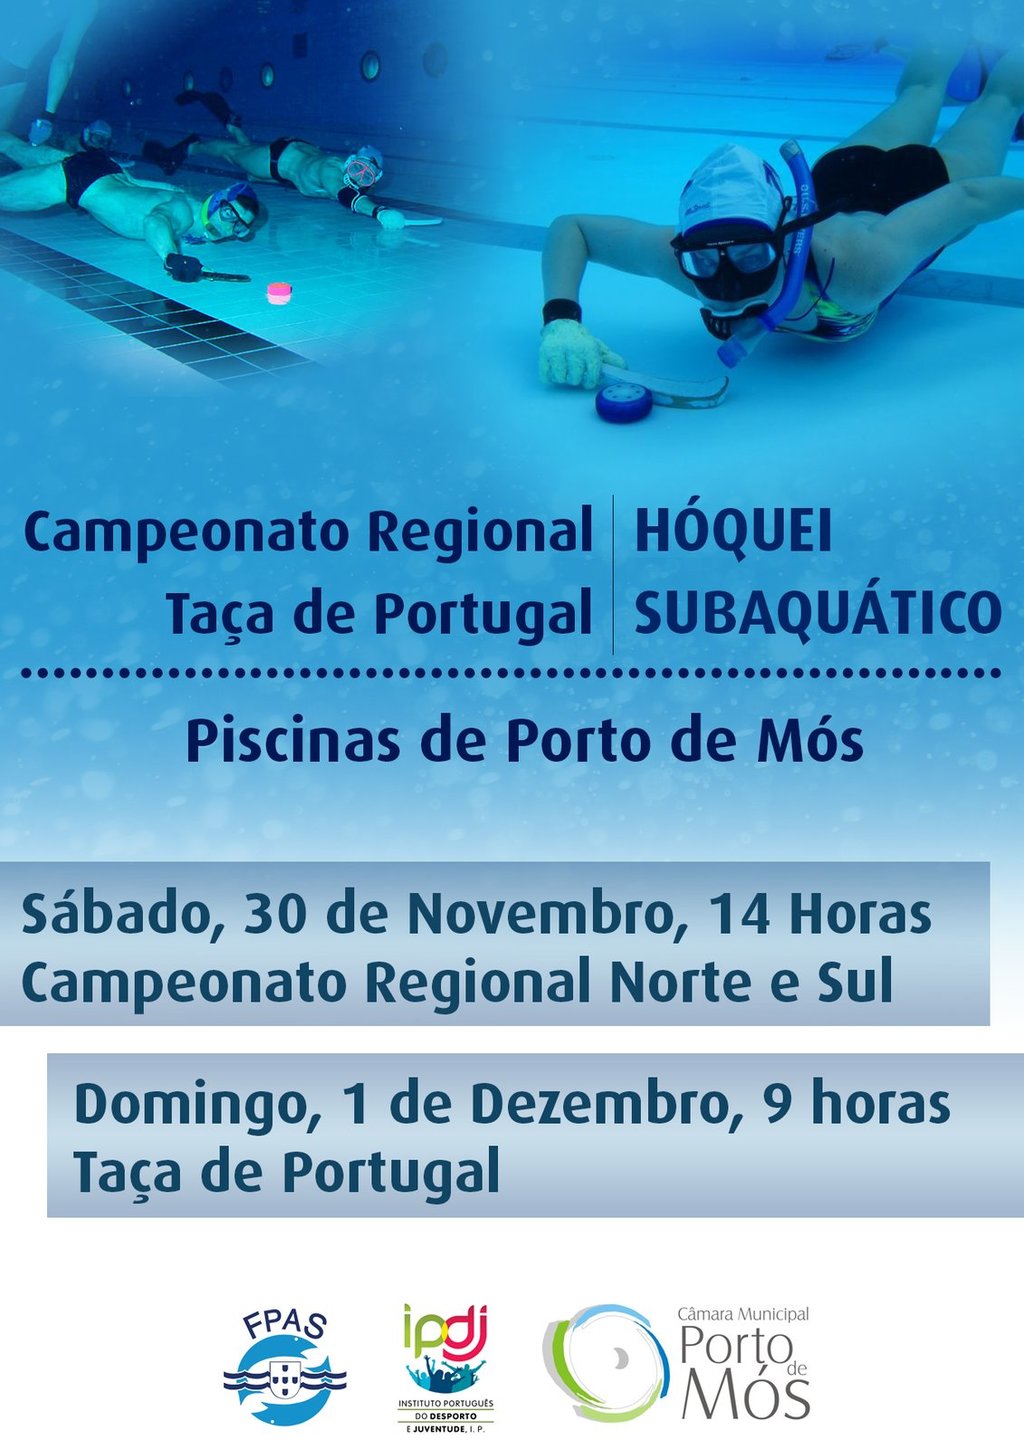 Hoquei Subaquático - Campeonato Regional e Taça de Portugal